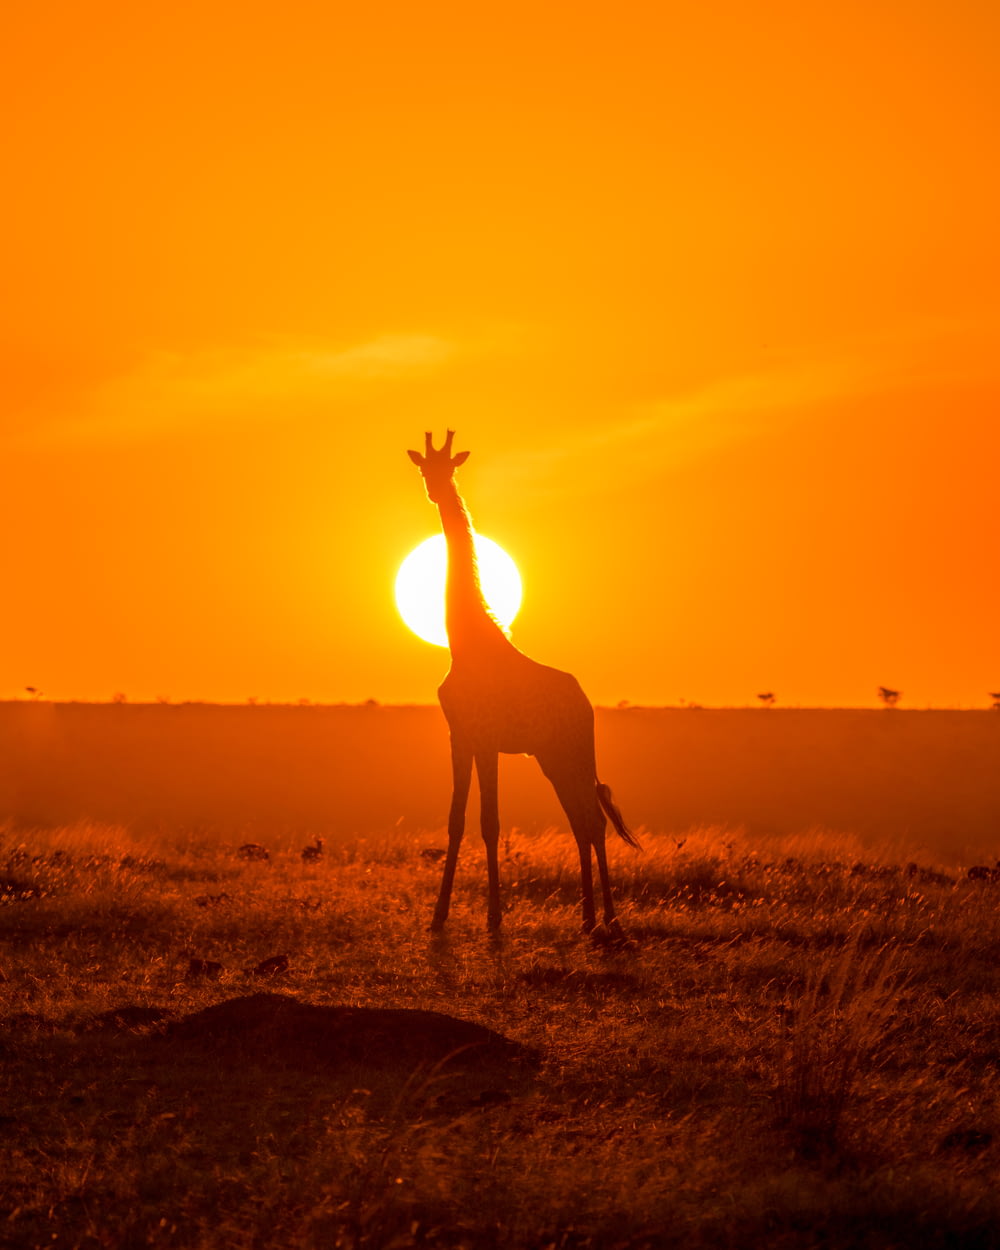 Silueta de jirafa en campo marrón durante la puesta de sol